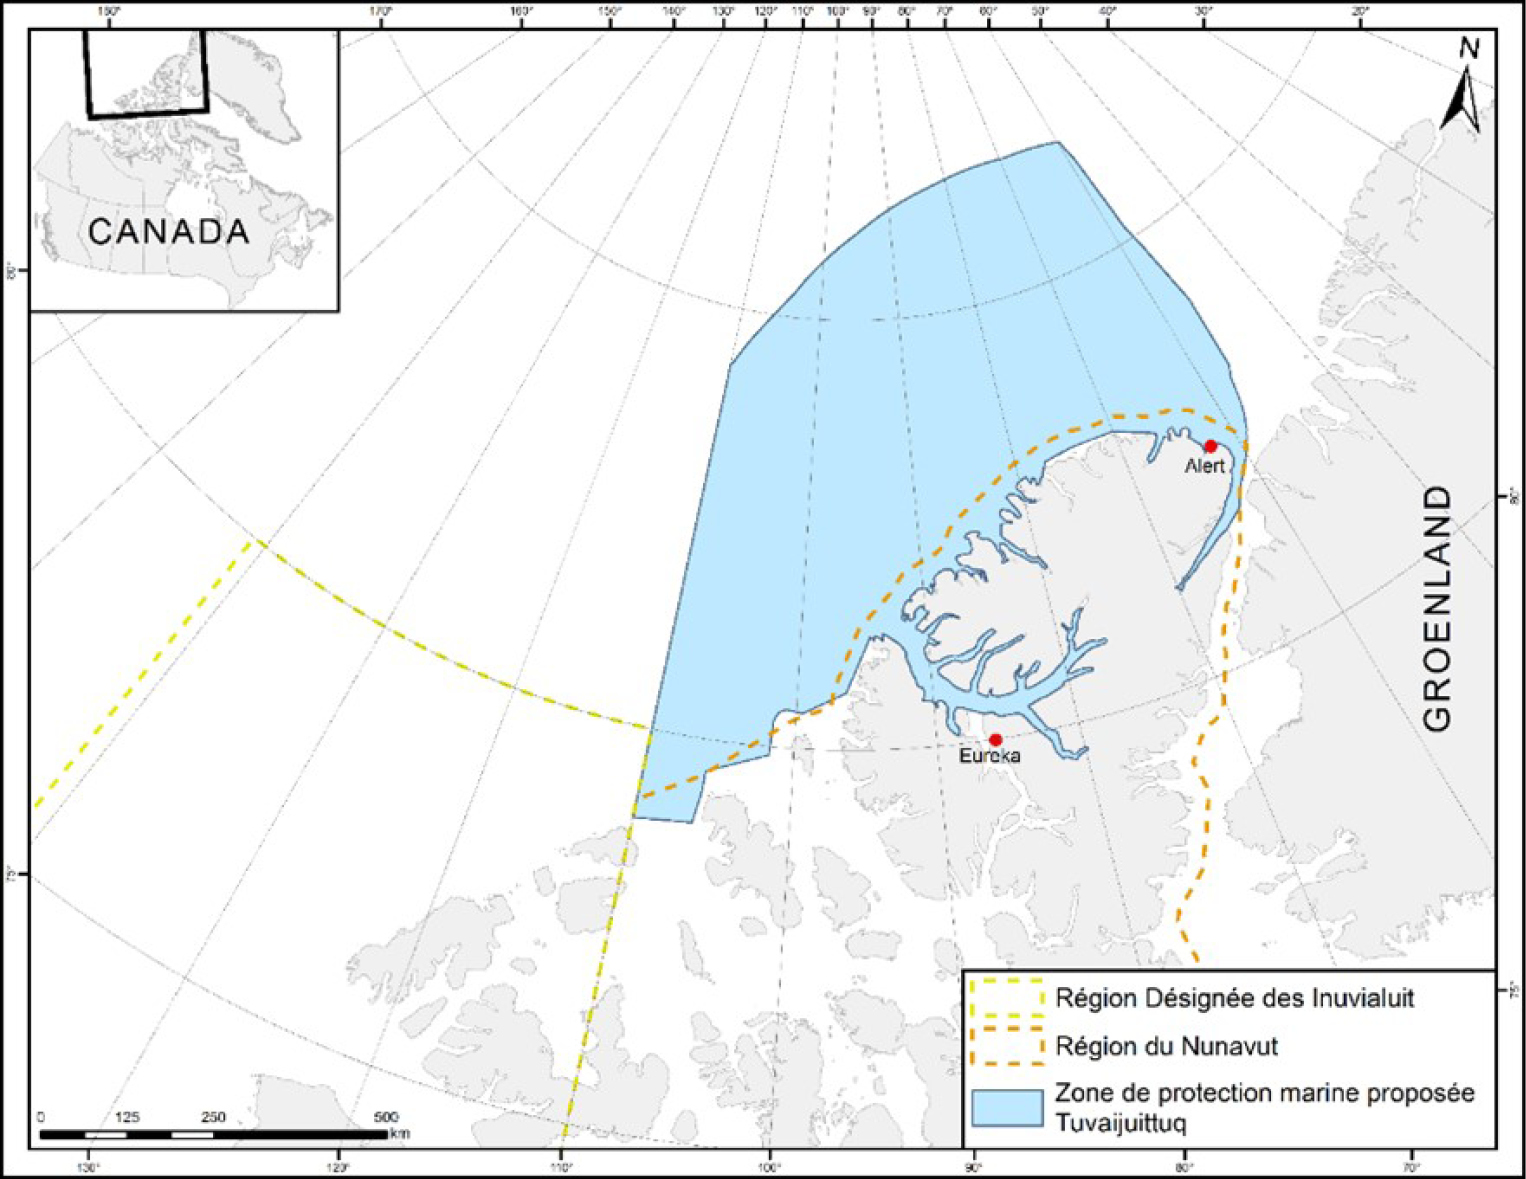 Figure 1. Carte de la zone de protection marine proposée de Tuvaijuittuq – Version textuelle en dessous de l'image